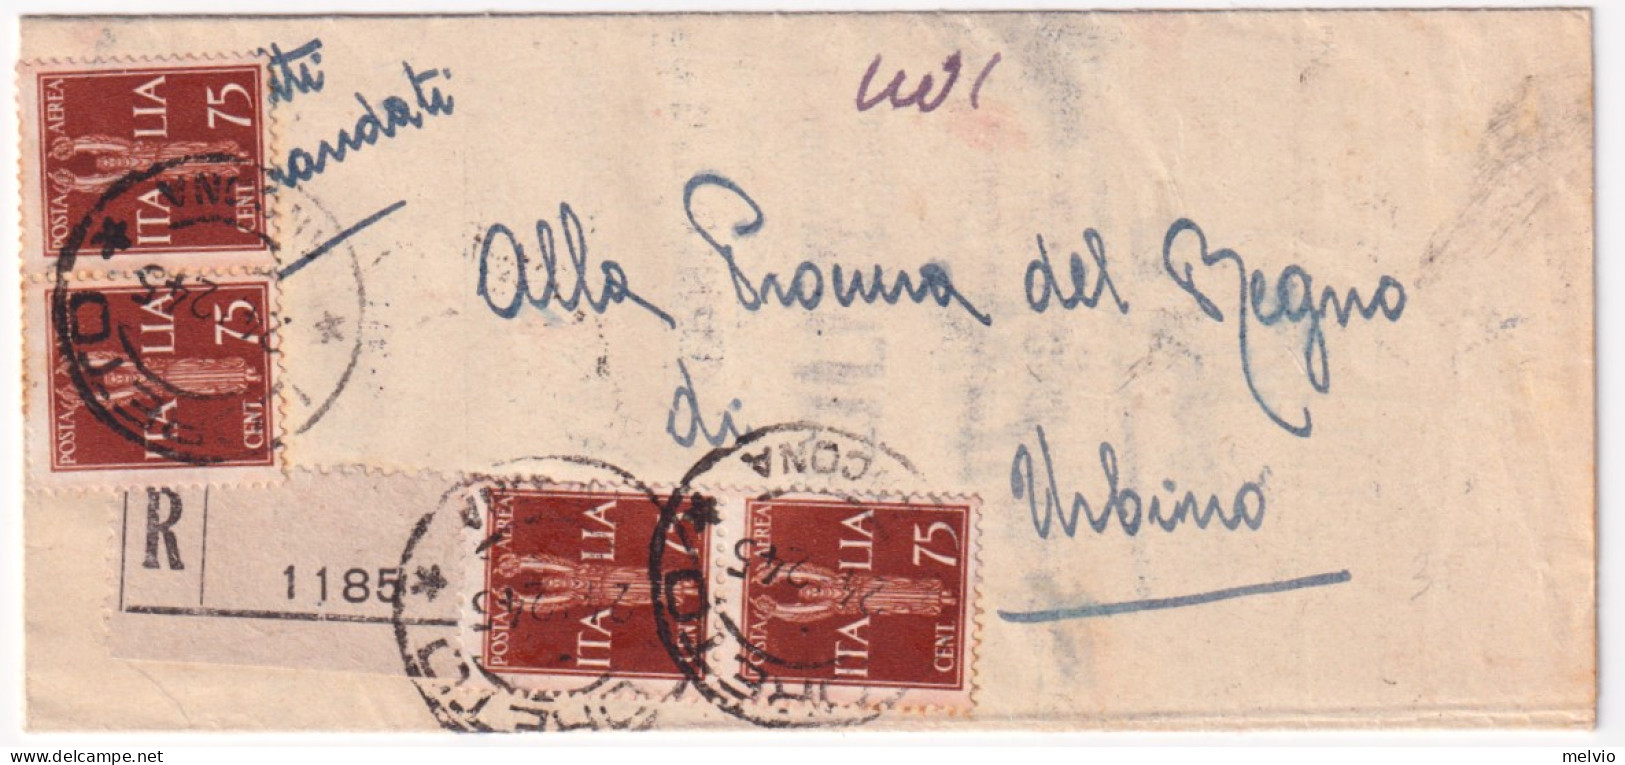 1945-Posta Aerea Tre Coppie (una Al Verso) C.75 + Al Verso Imperiale Tre C.10 (a - Marcophilia